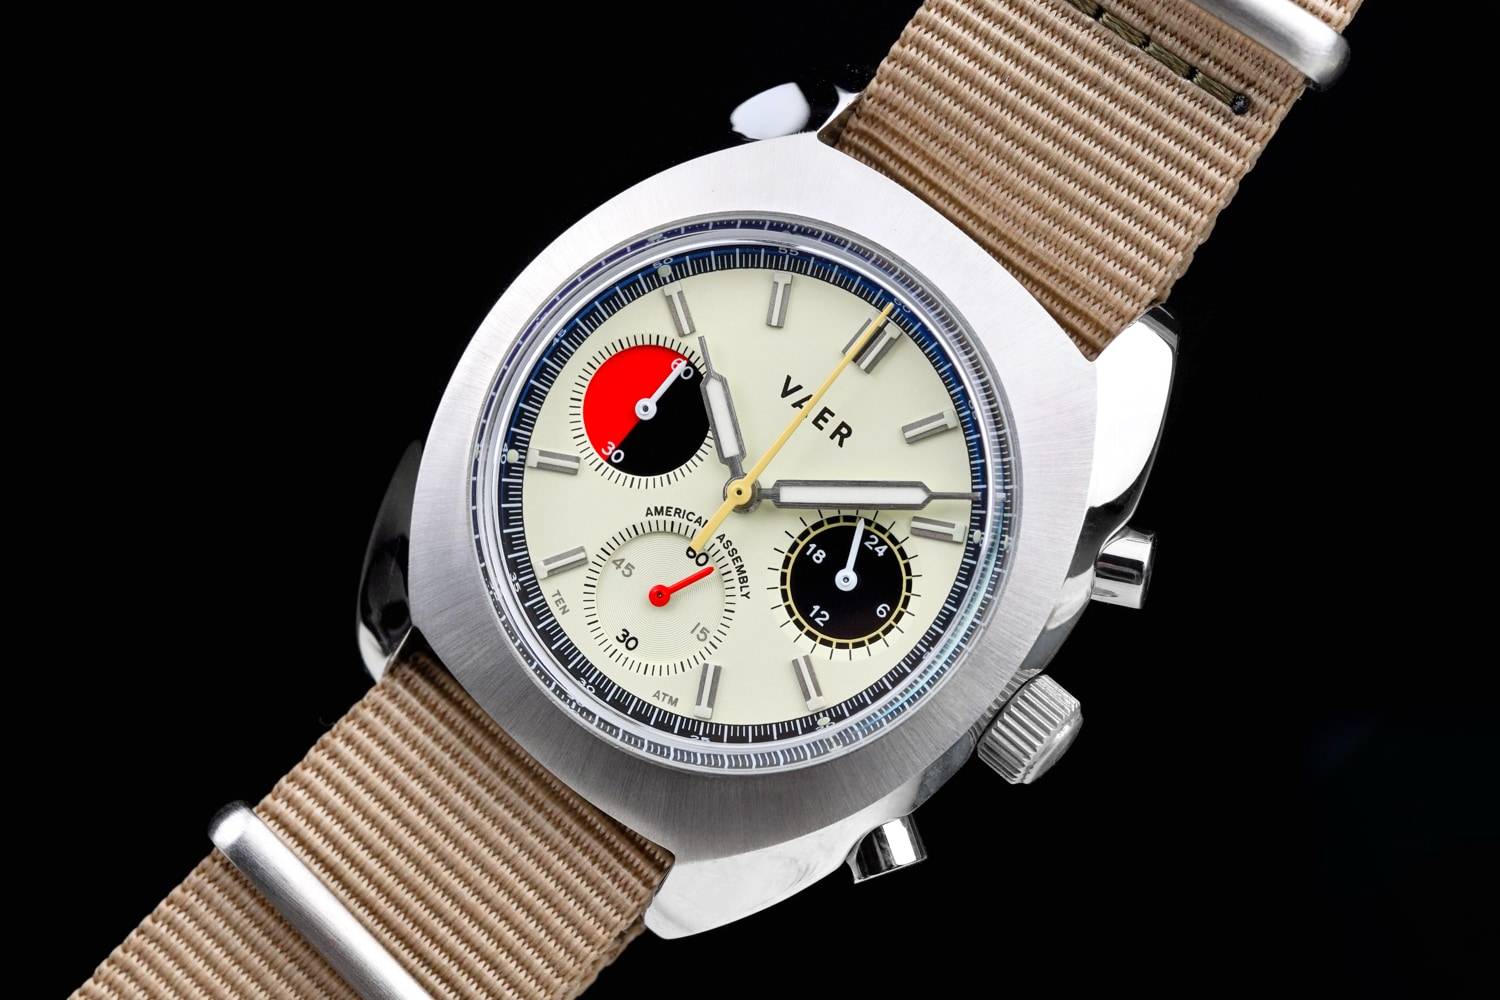 R1 USA Quartz Wristwatch Care and Handling Guide